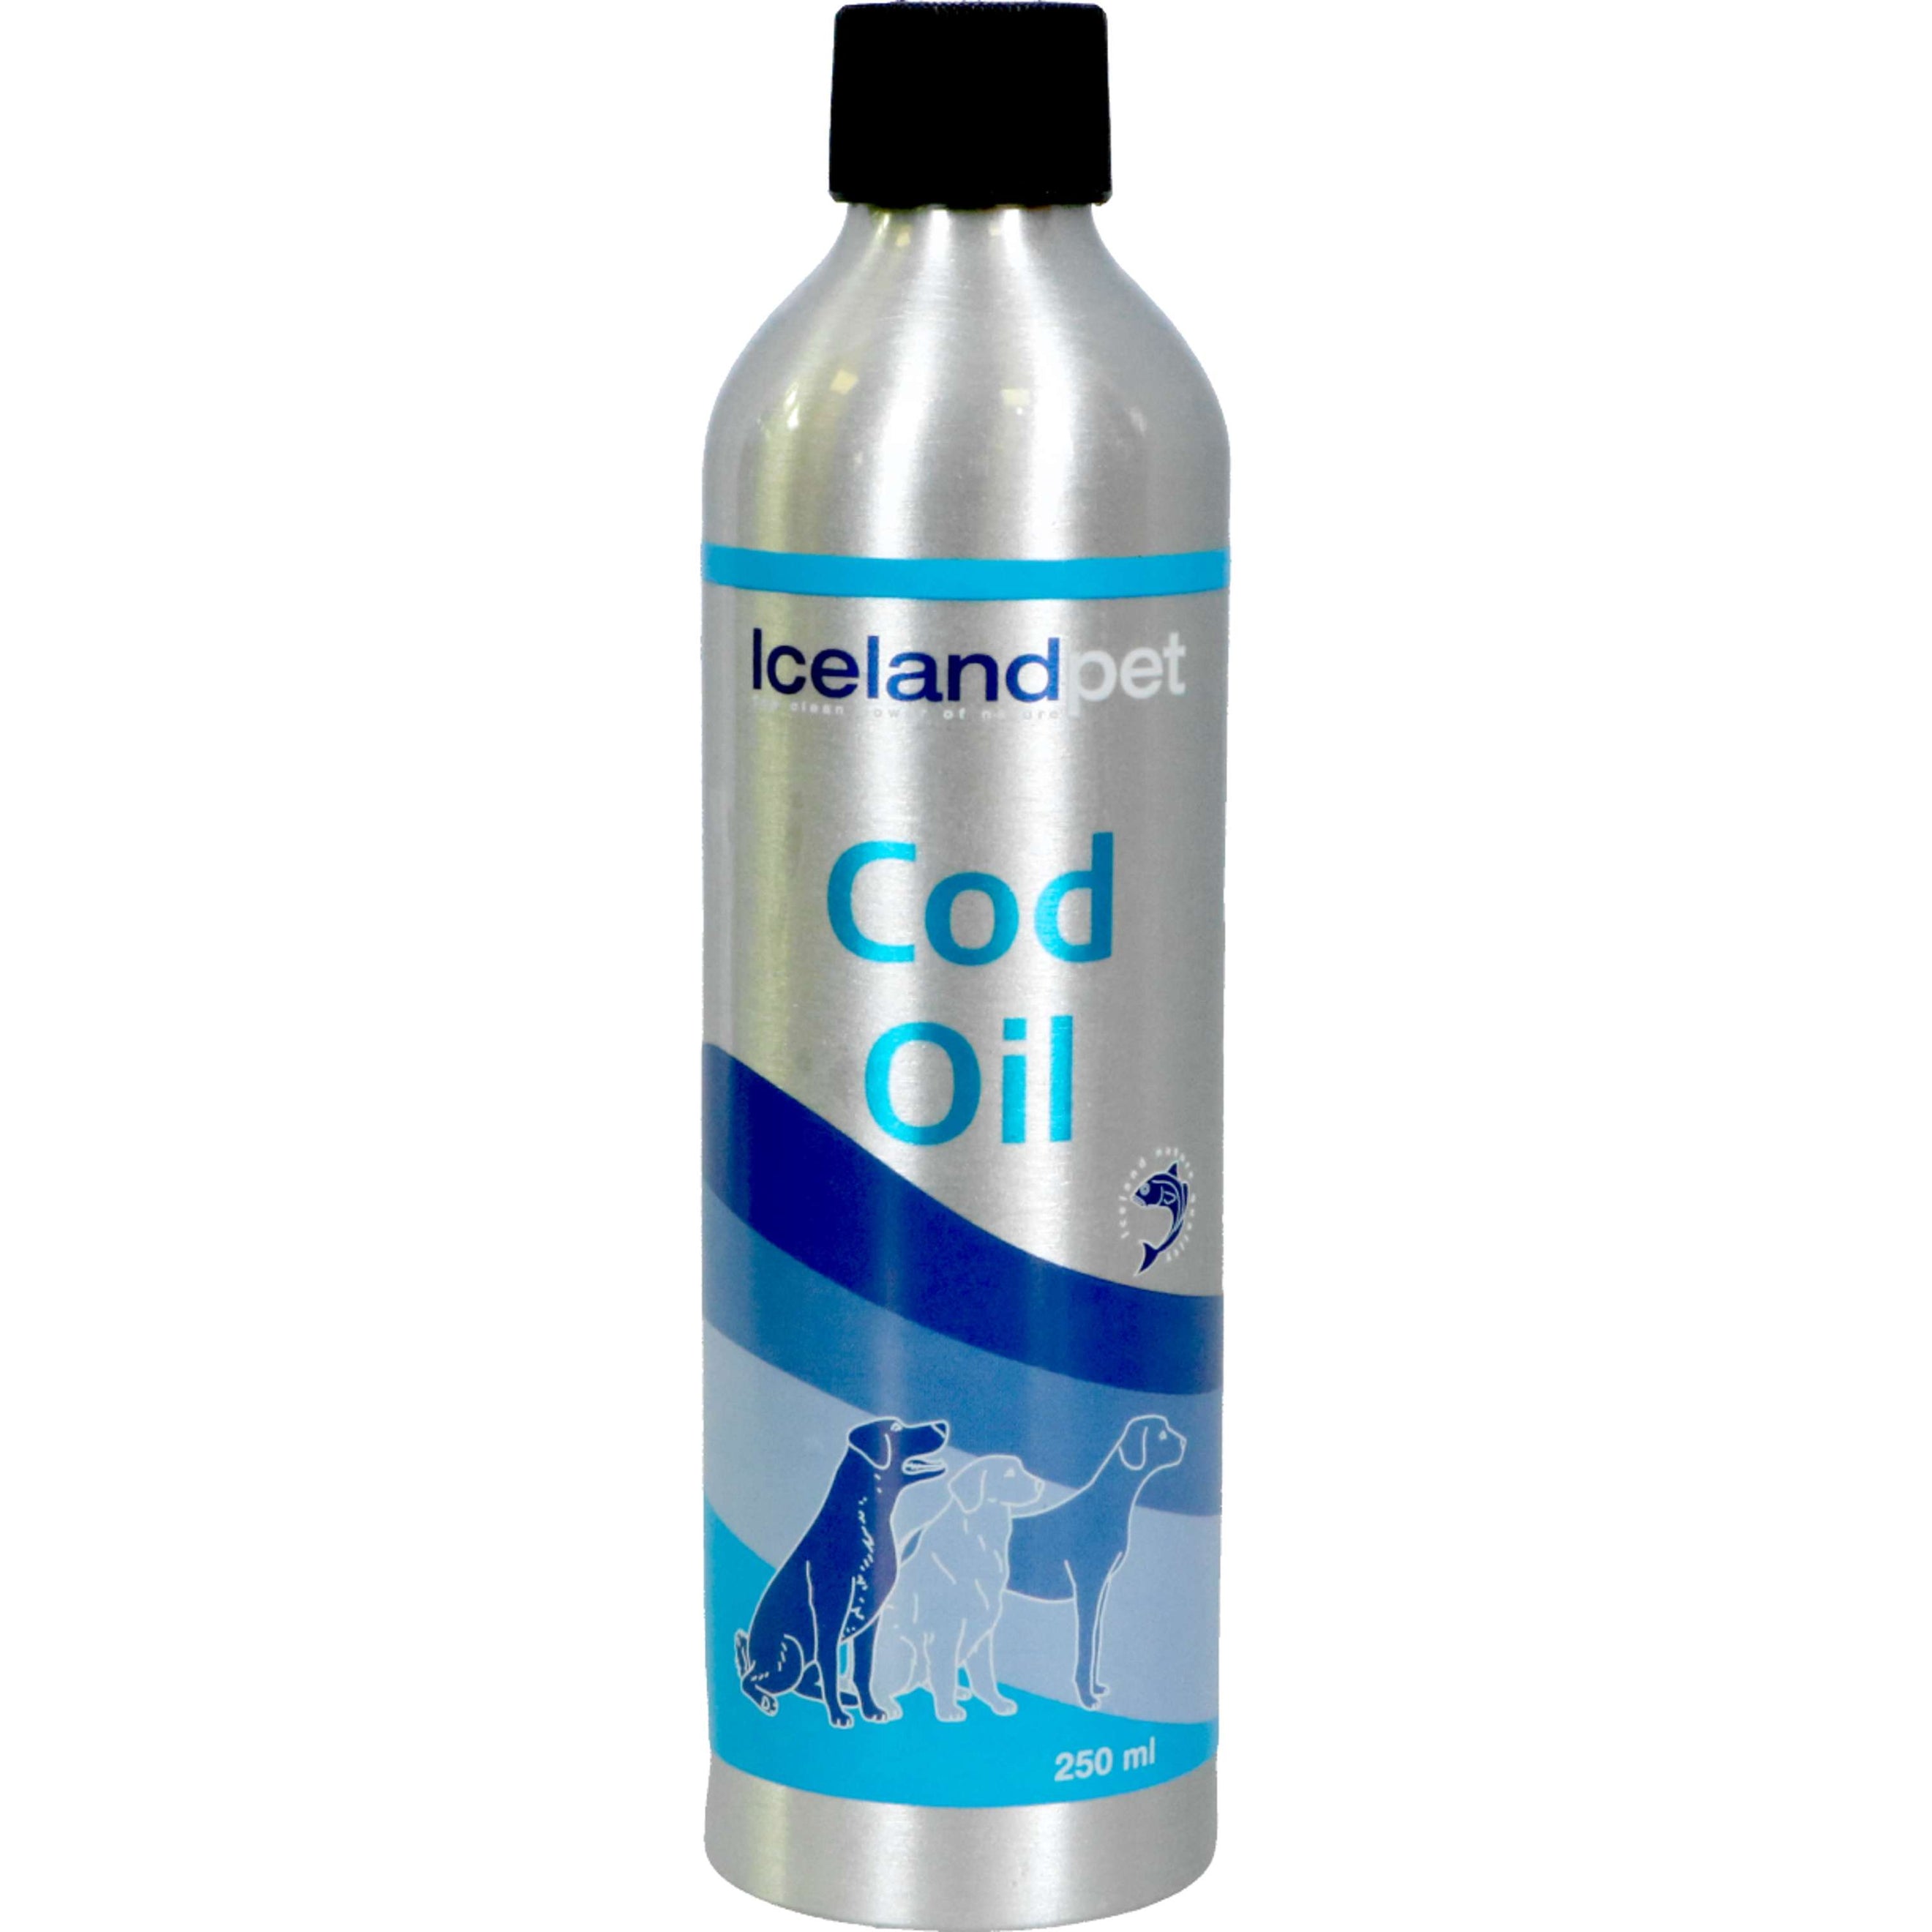 Icelandpet Cod Oil